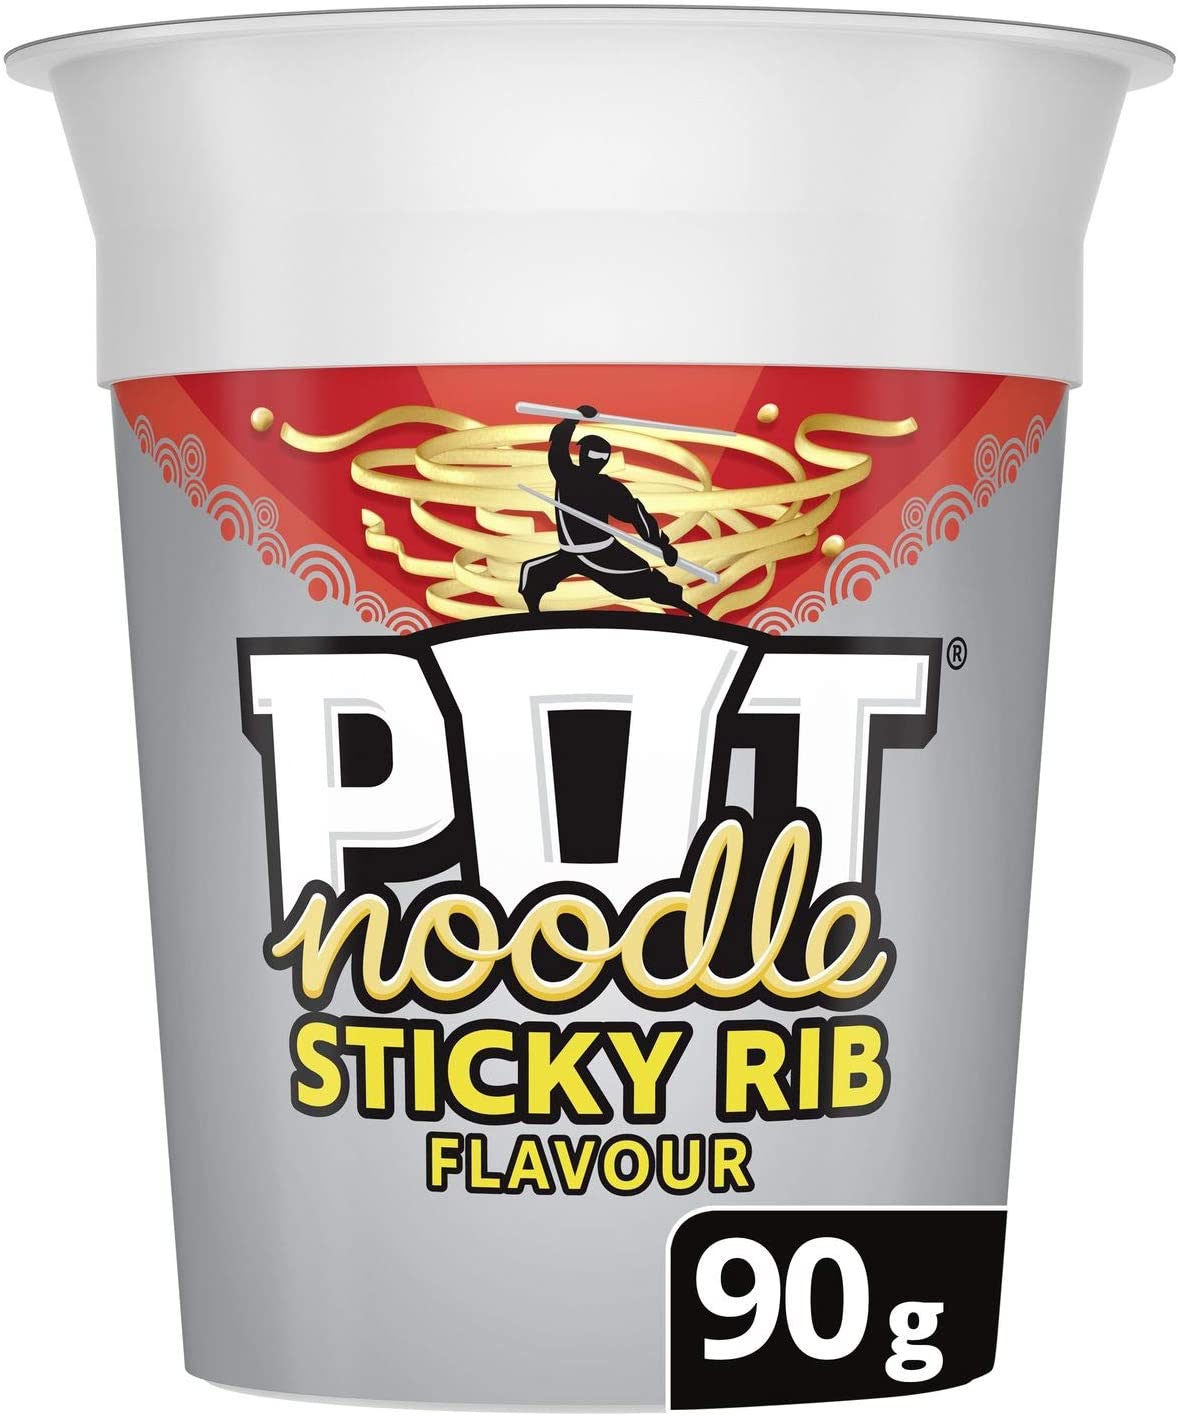 Pot Noodles Sticky Rib 90g